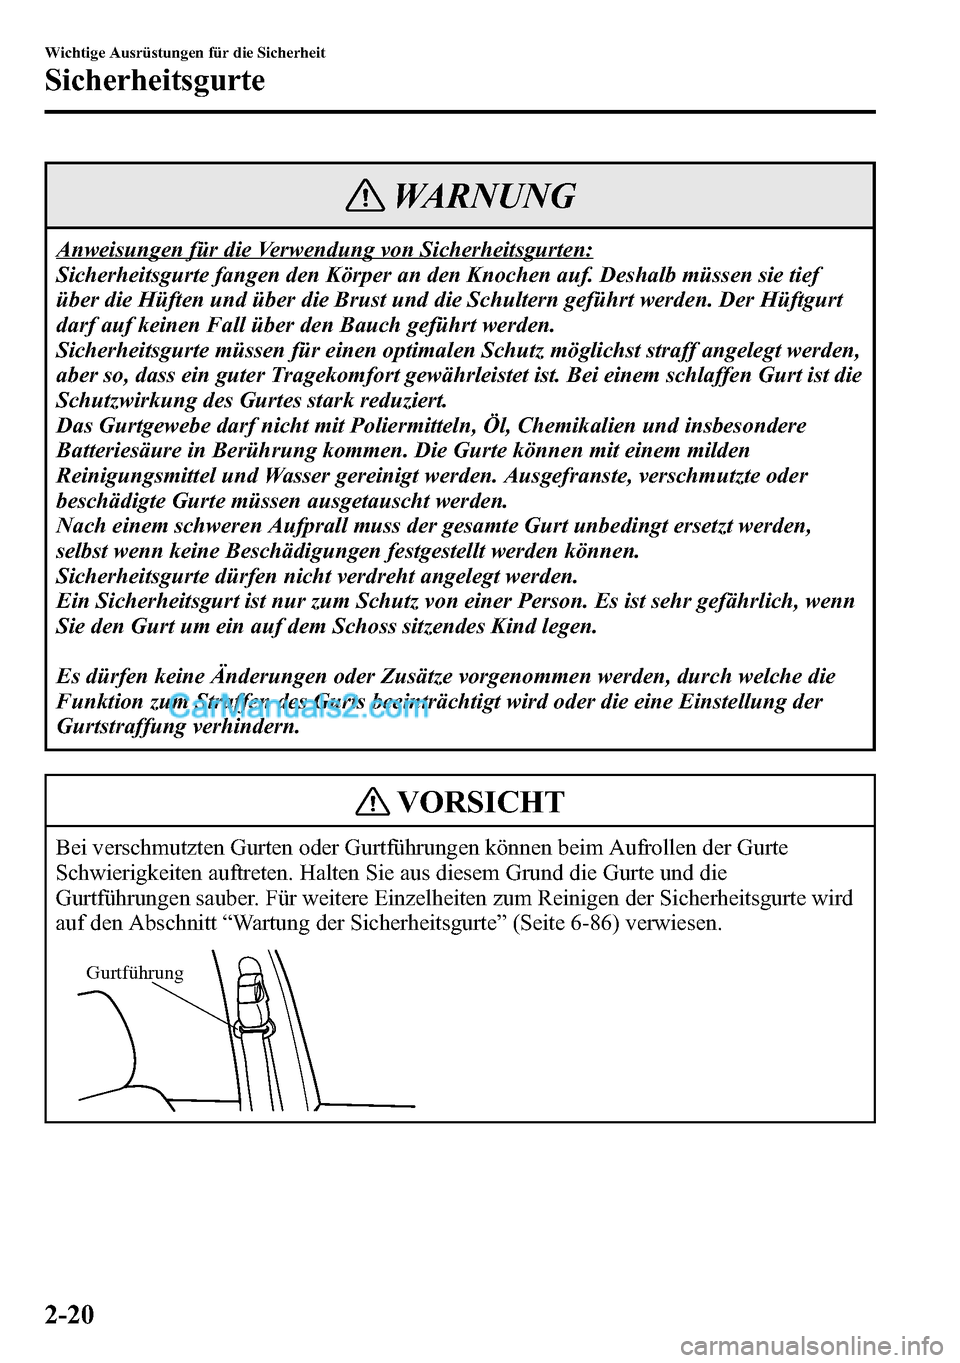 MAZDA MODEL CX-5 2016  Betriebsanleitung (in German) WARNUNG
Anweisungen für die Verwendung von Sicherheitsgurten:
Sicherheitsgurte fangen den Körper an den Knochen auf. Deshalb müssen sie tief
über die Hüften und über die Brust und die Schultern 